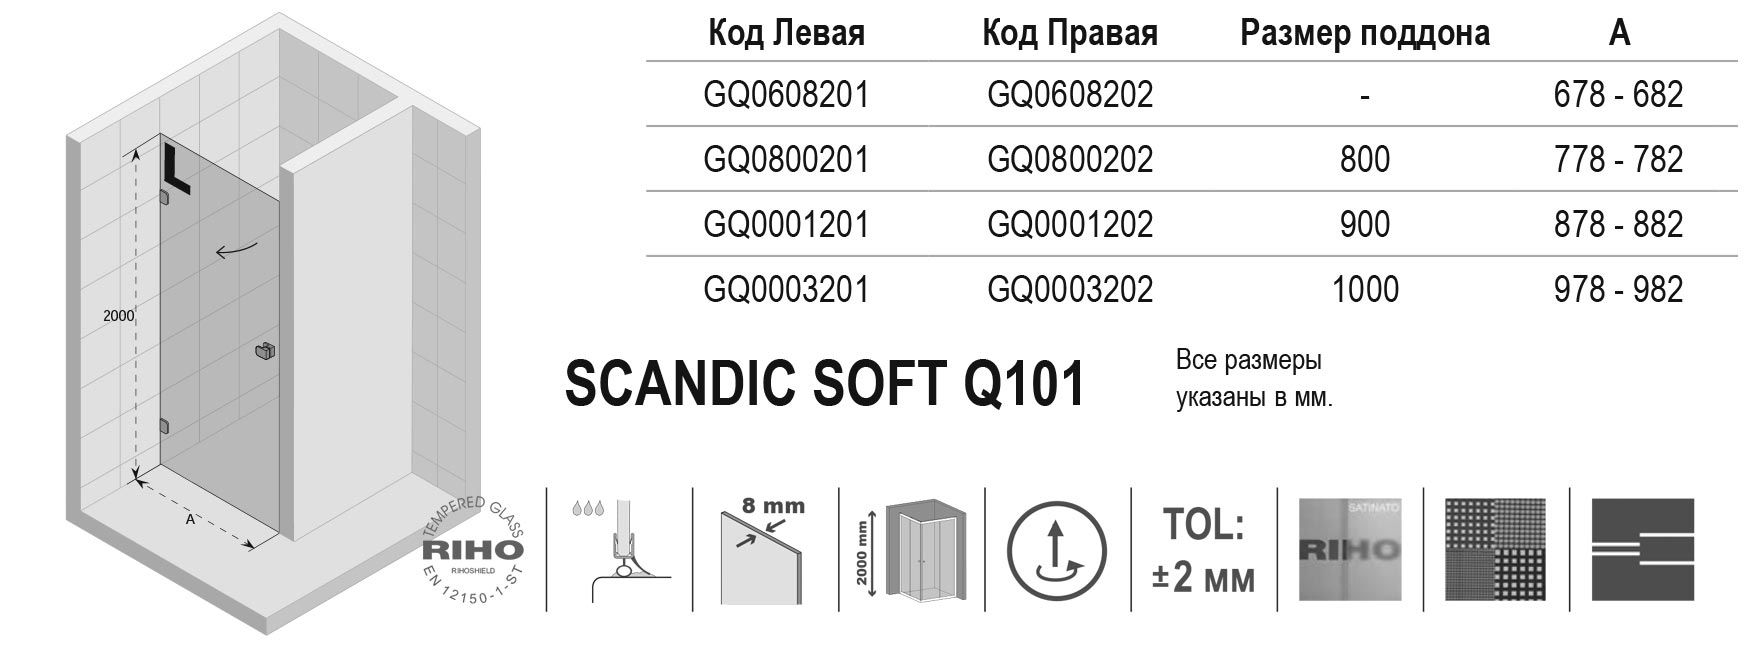 Чертёж Riho Scandic Soft Q101 GQ0003201